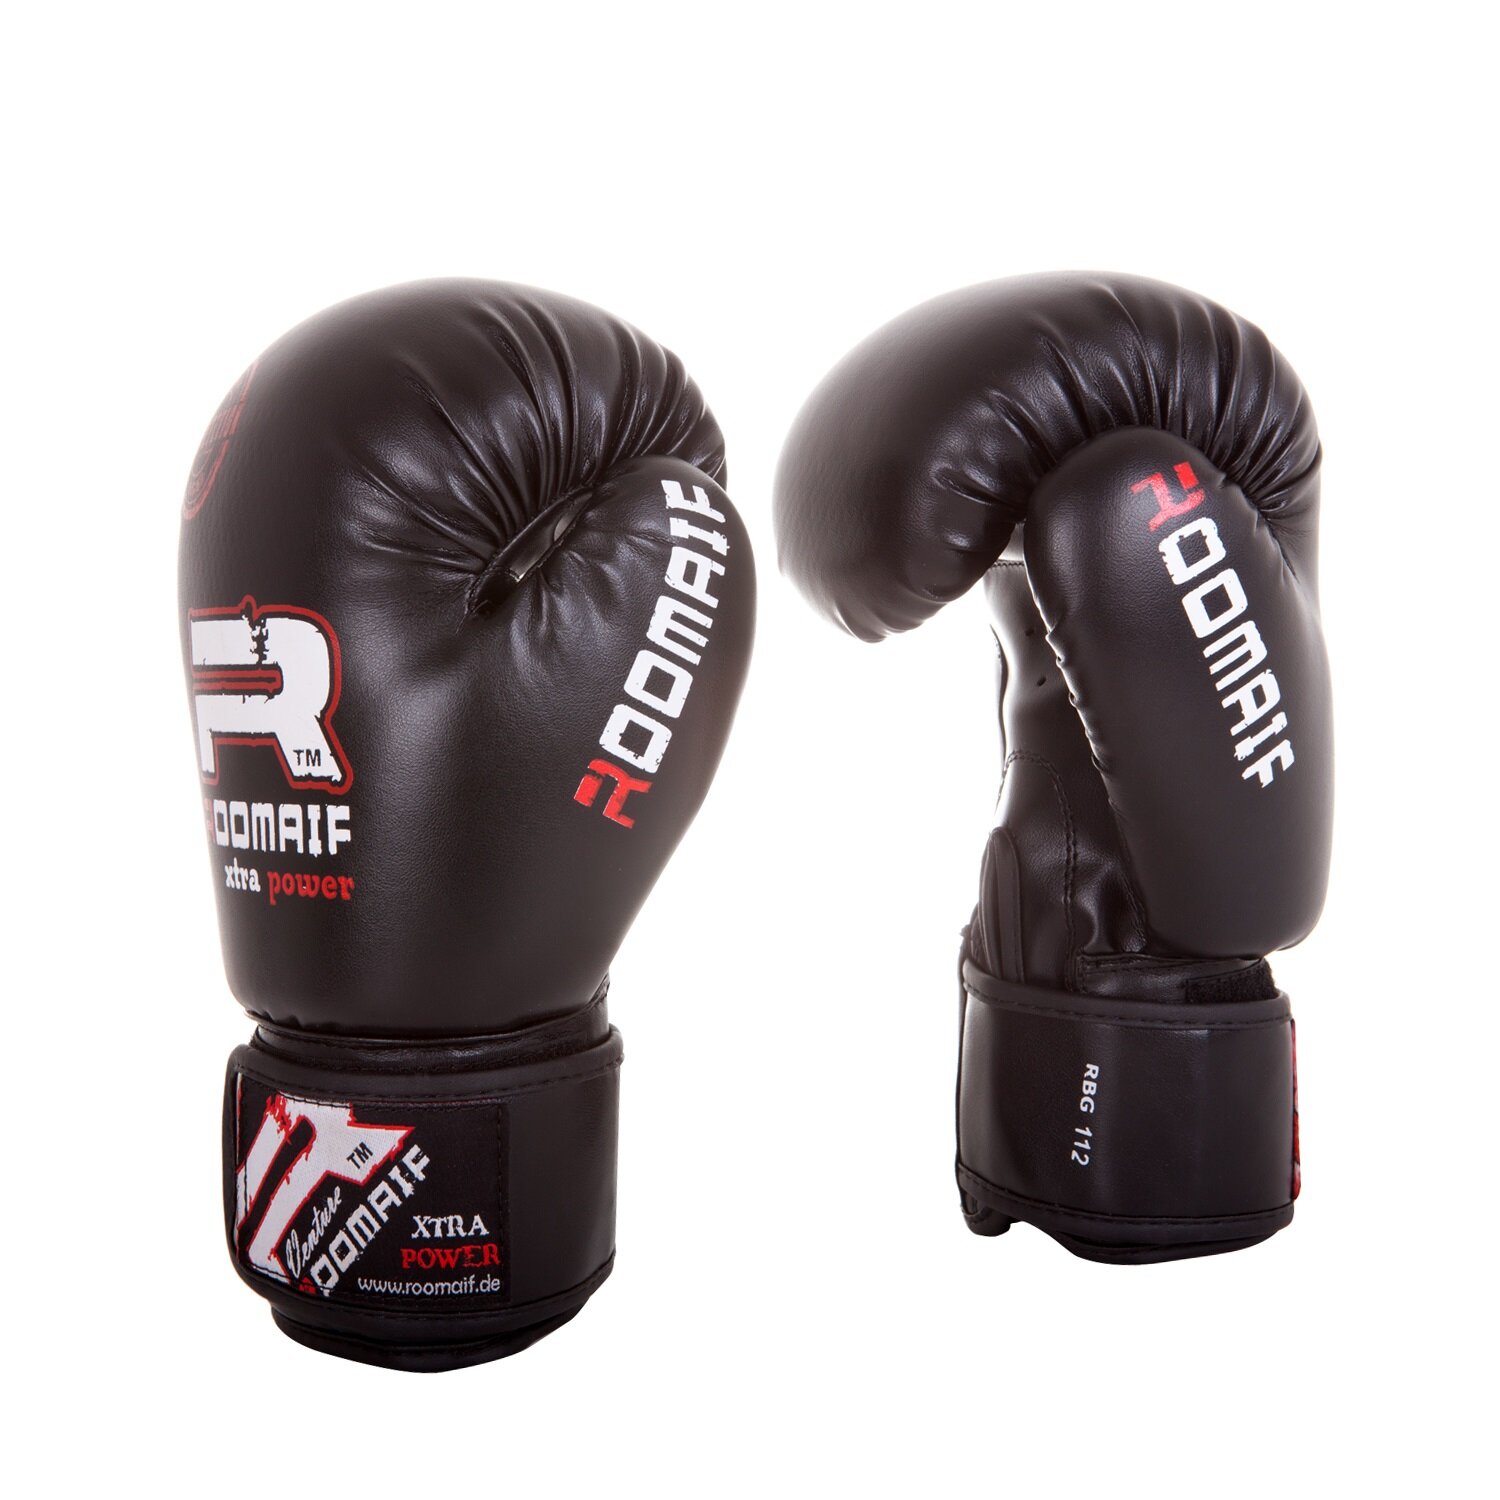 Боксерские перчатки Roomaif Rbg-112 Dx Black размер 8 oz